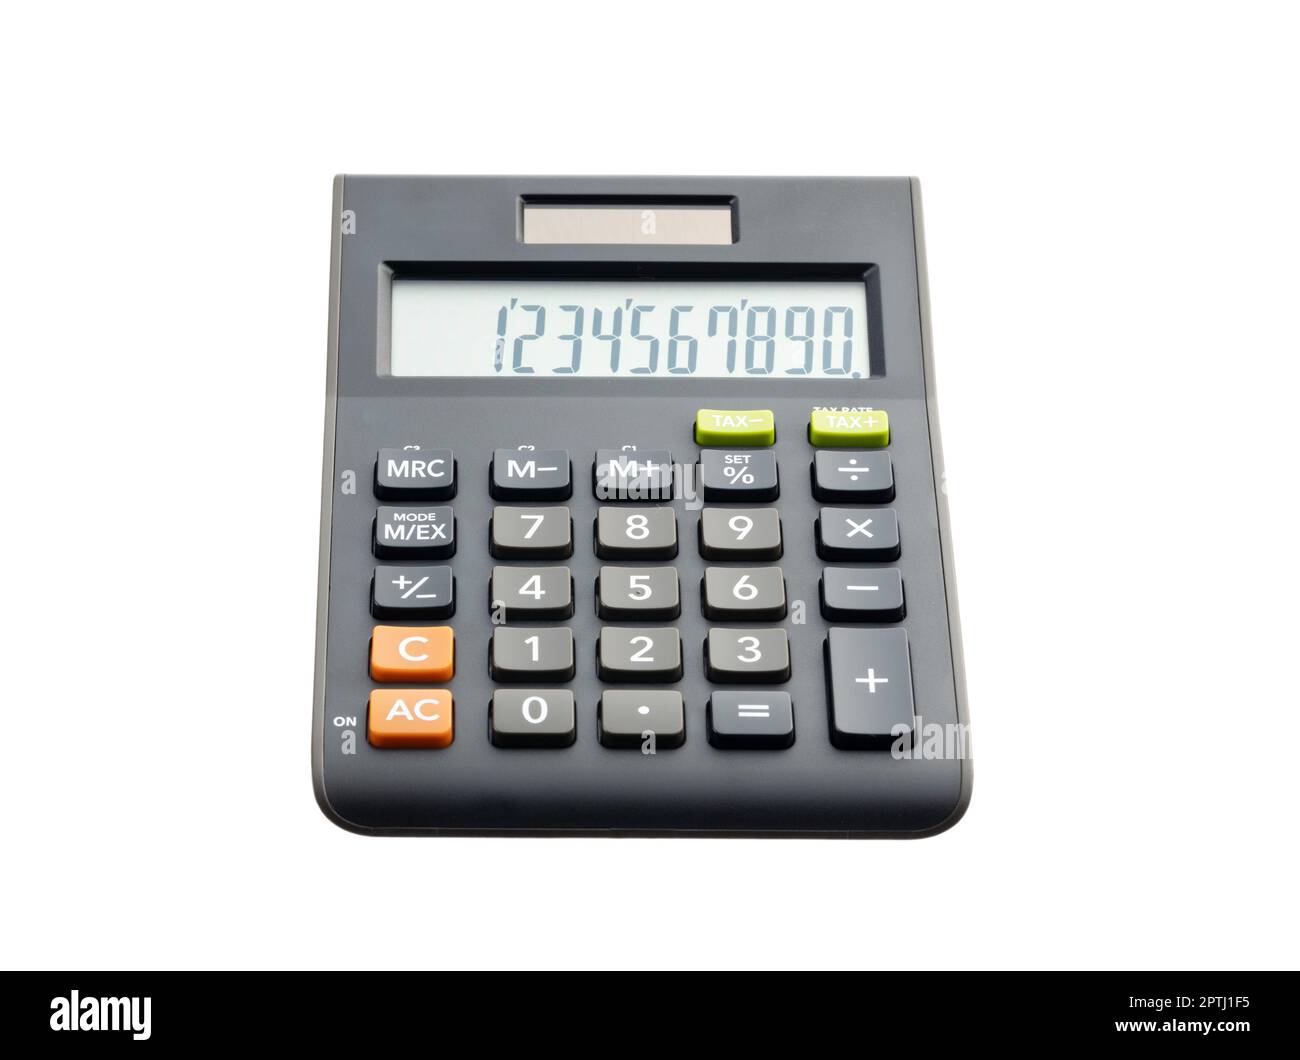 Basic calculator isolated on the white background. Stock Photo